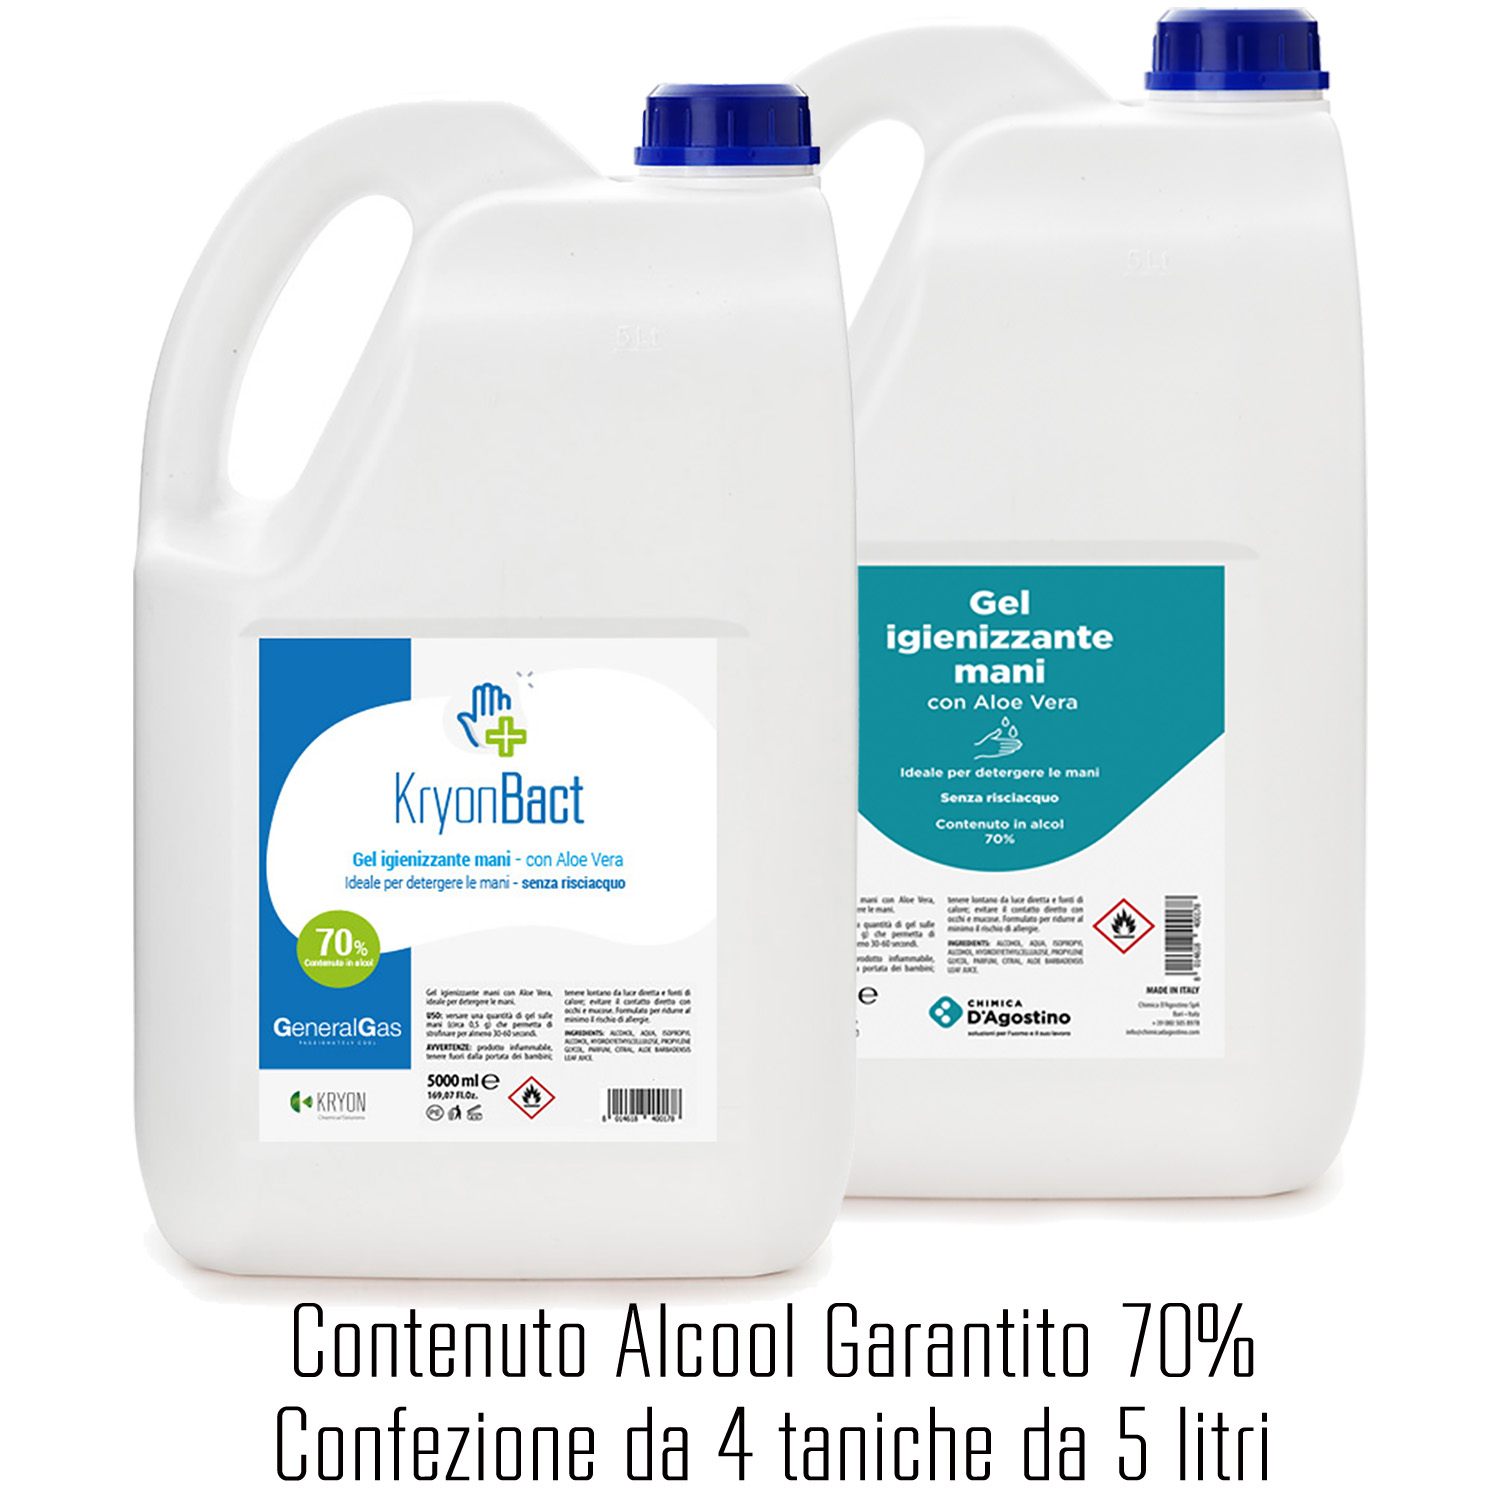 KryonBact 70 - gel igienizzante alcool 70% - tanica 5 litri - confezione 4 taniche - Foto 1 